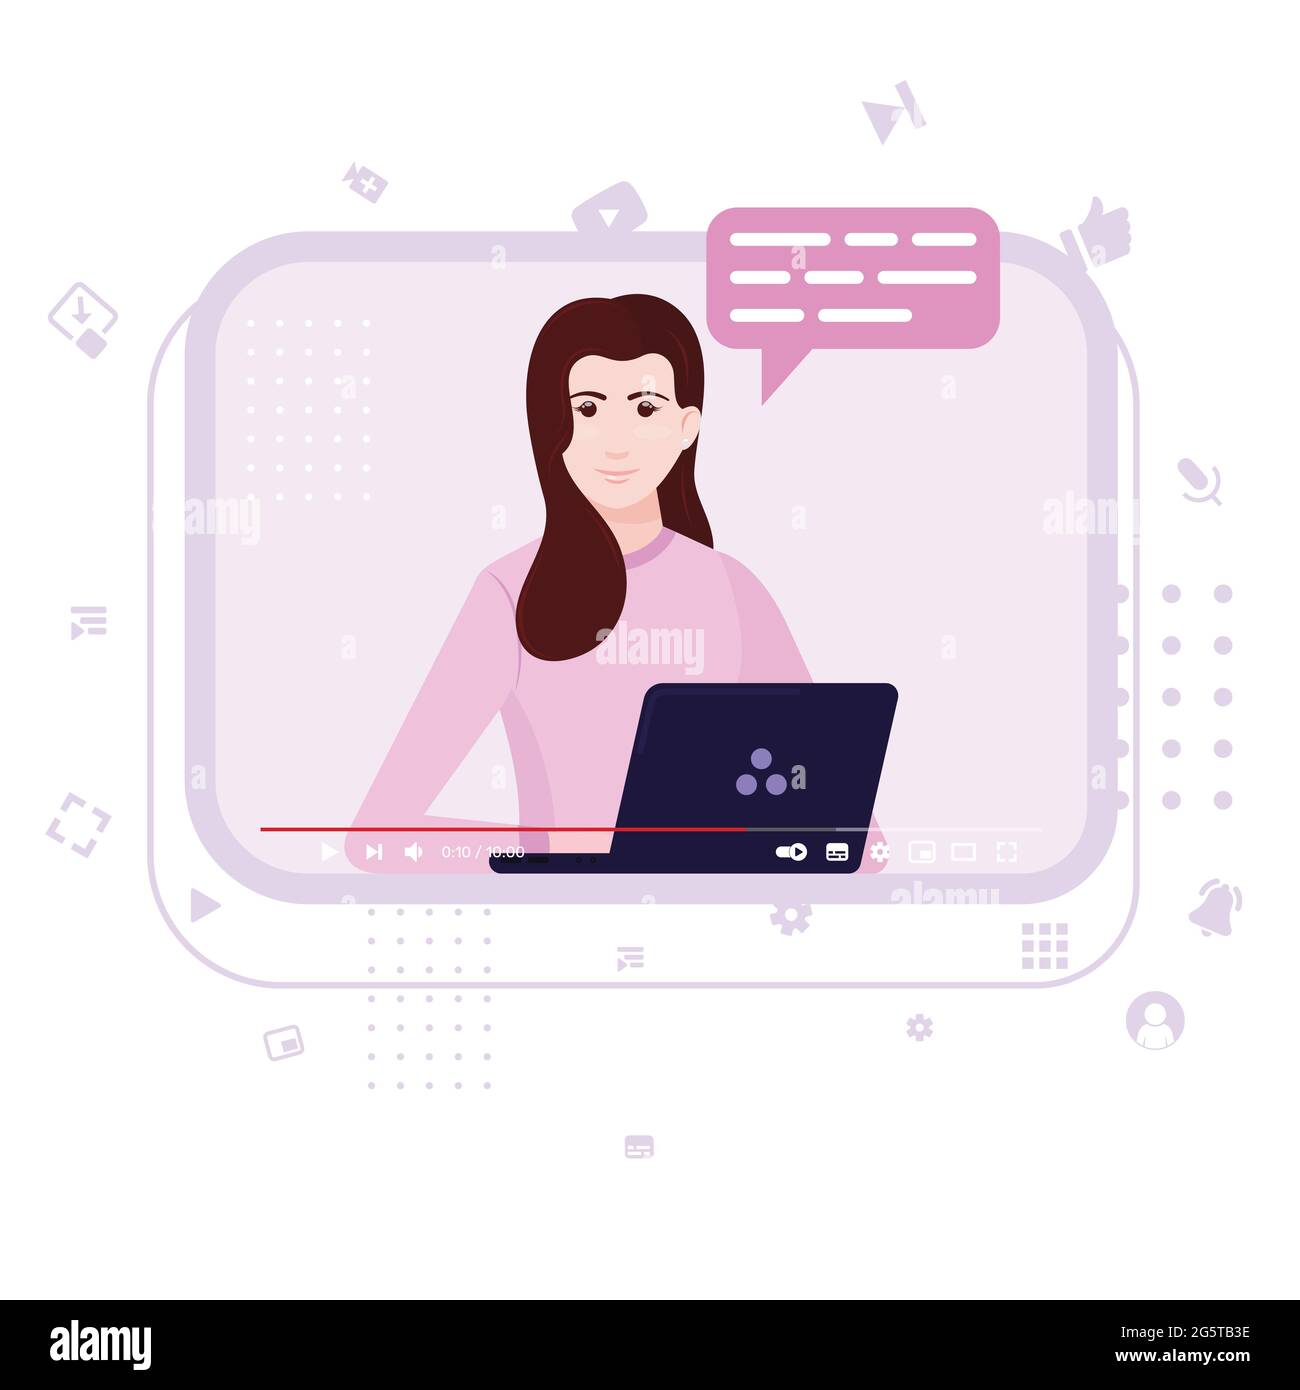 Vektor-Design von Video-Tutorial, Online-Video-Wiedergabe, Kommunikator im Online-Kurs, Video-Website-Schnittstelle mit weiblichen Influencer mit ihrem Laptop Stock Vektor